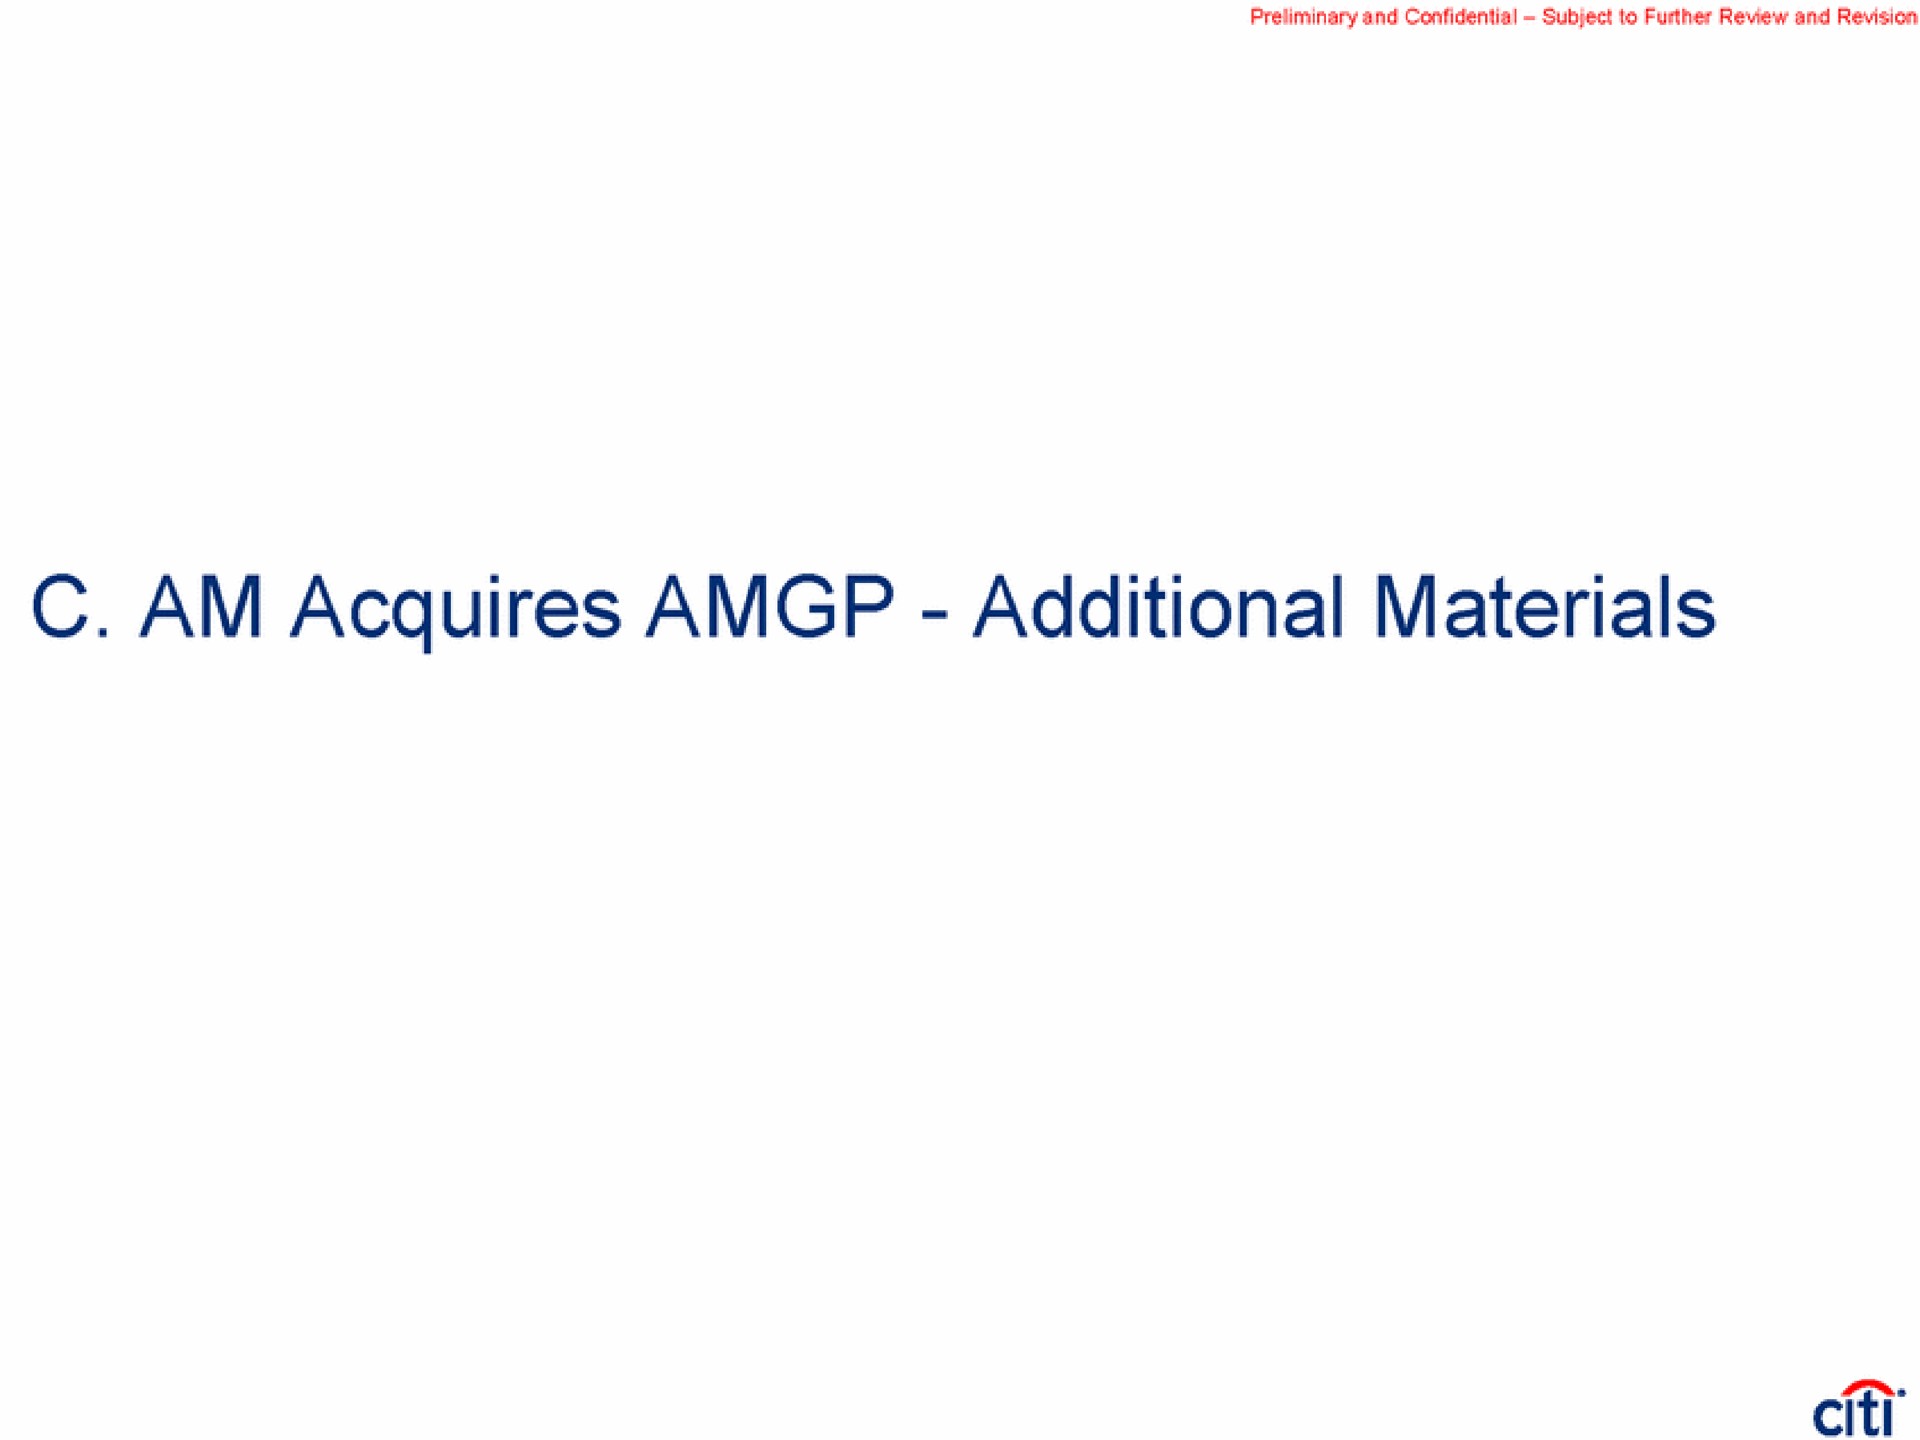 am acquires additional materials | Citi